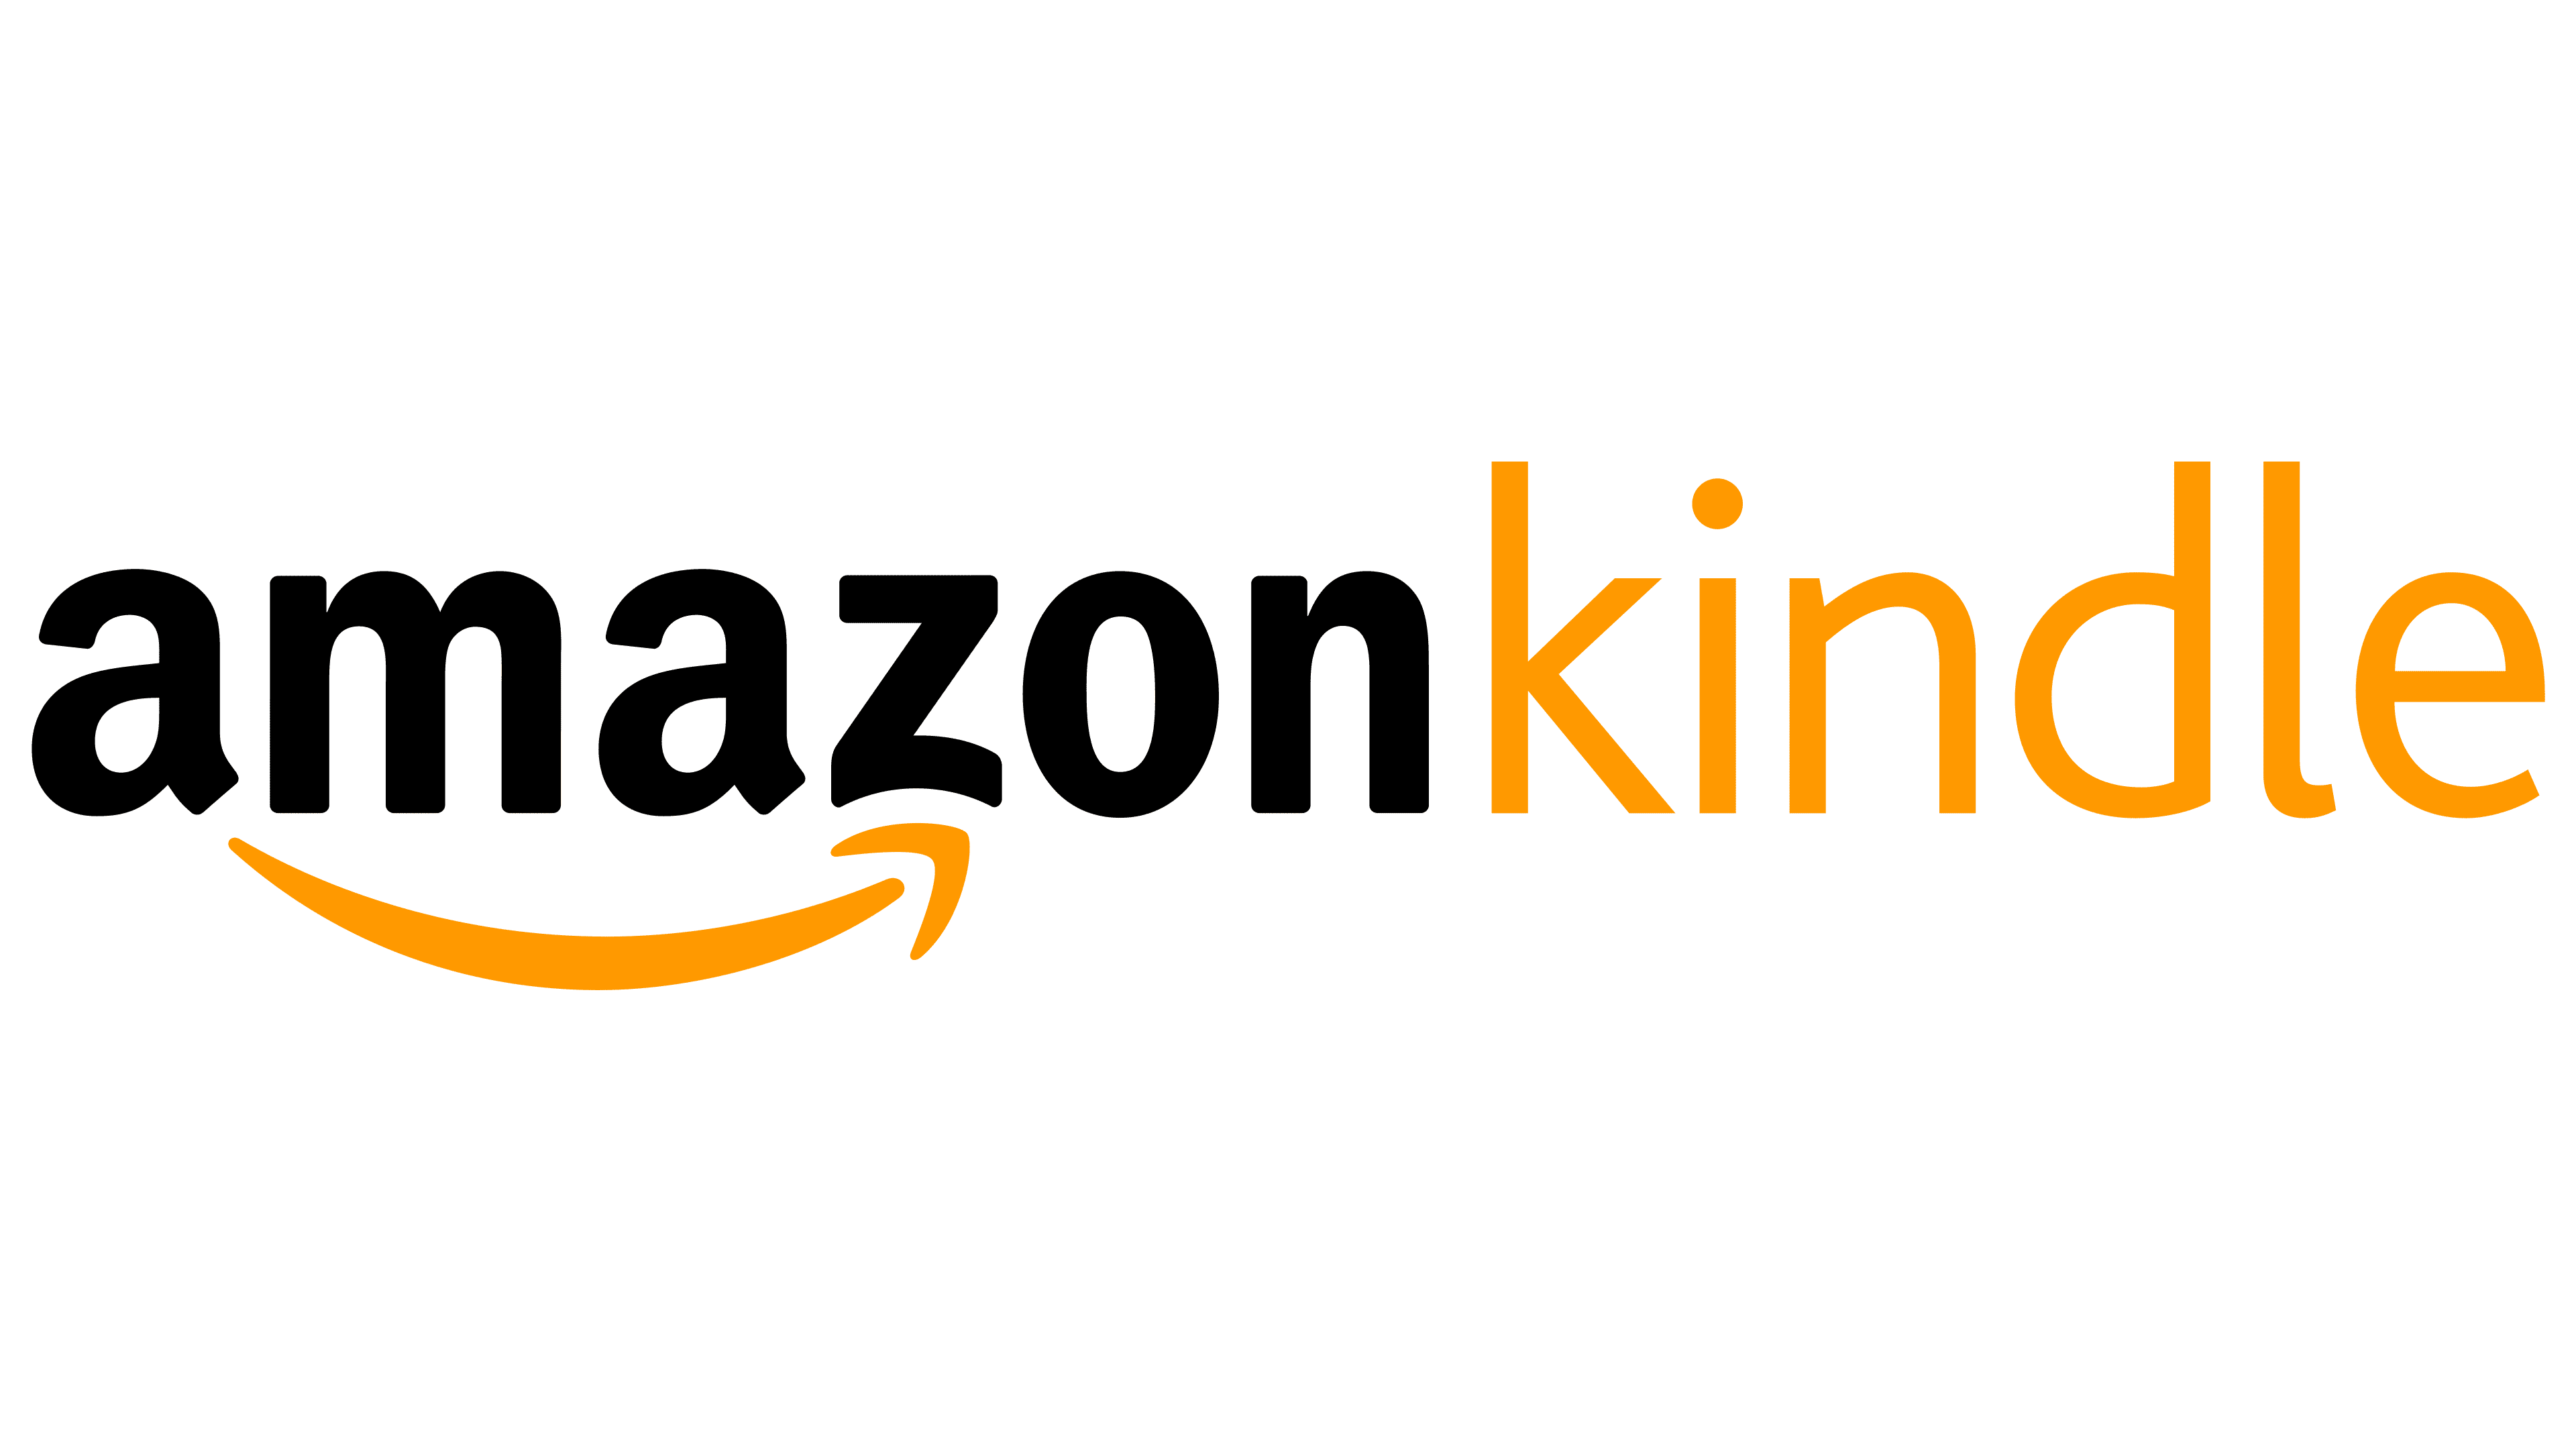 Logo Amazon Kindle không chỉ là một biểu tượng, mà còn là thương hiệu đặc trưng cho sự tiện lợi và độc đáo của máy đọc sách Kindle. Nếu bạn muốn biết thêm về ý nghĩa và lịch sử của logo này, hãy tìm kiếm hình ảnh chấp nhận được của Kindle app trên PNG để đảm bảo chất lượng hình ảnh.